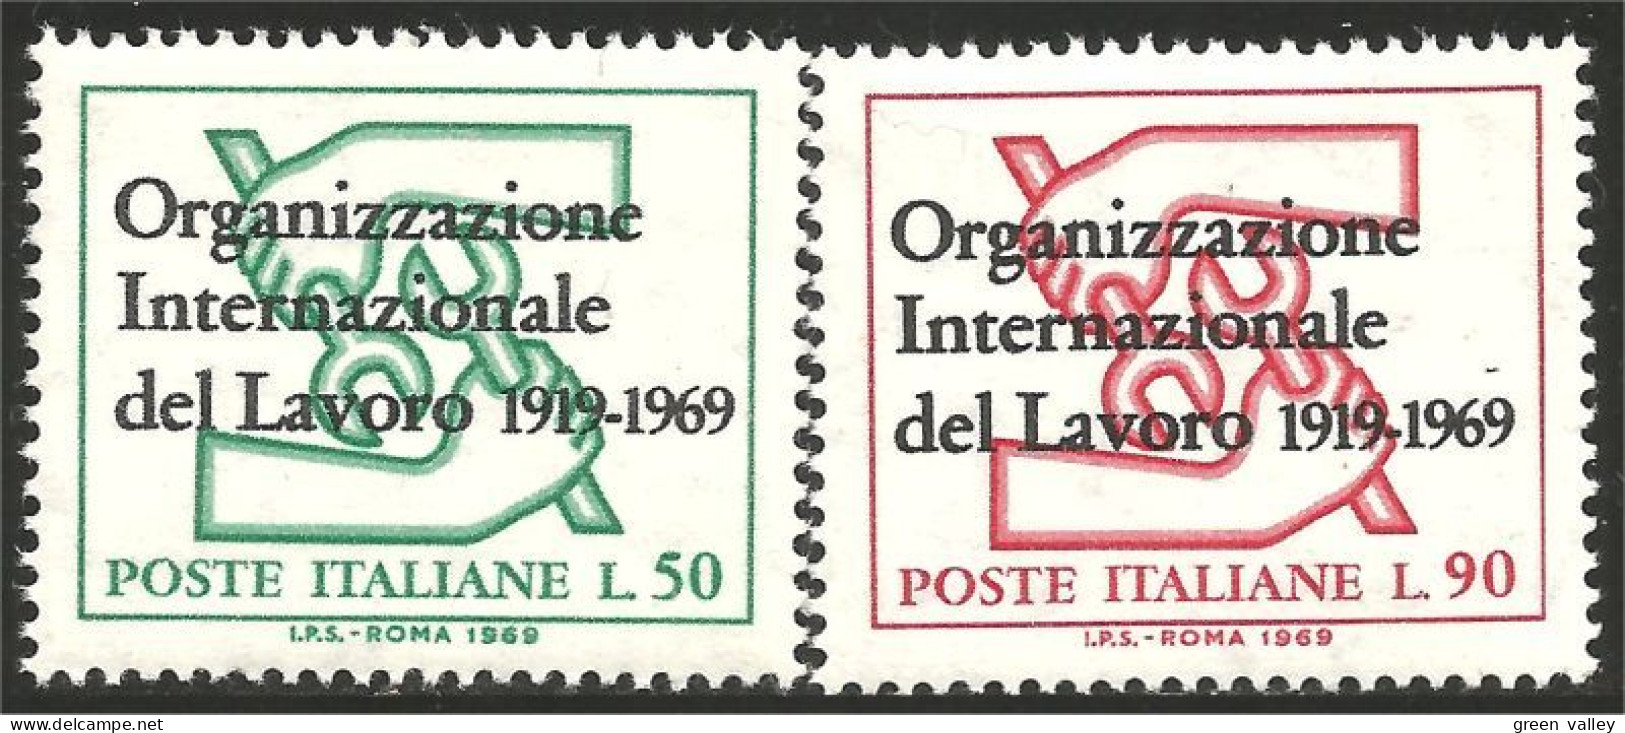 520 Italy ILO OIT Labour Organisation Travail MNH ** Neuf SC (ITA-115b) - IAO